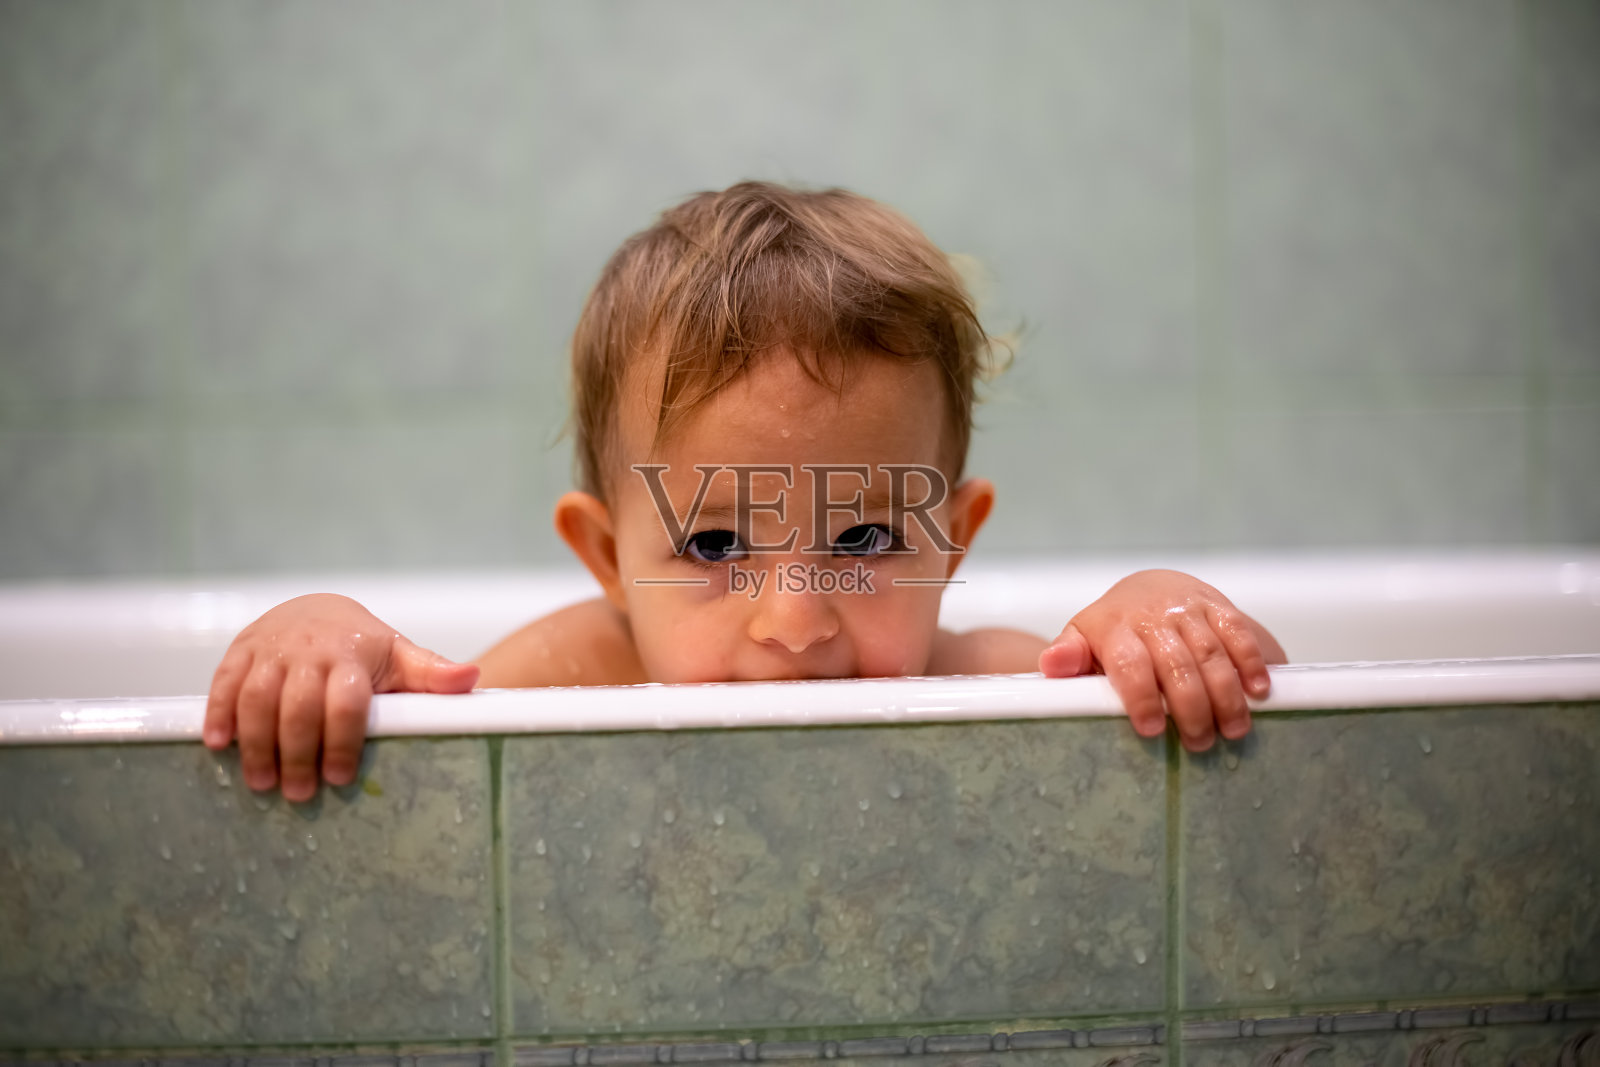 可爱的白人婴儿从浴缸里探出头来，把手放在浴缸边，看着镜头咬它。背景是一个模糊的绿色浴室。特写,软焦点照片摄影图片